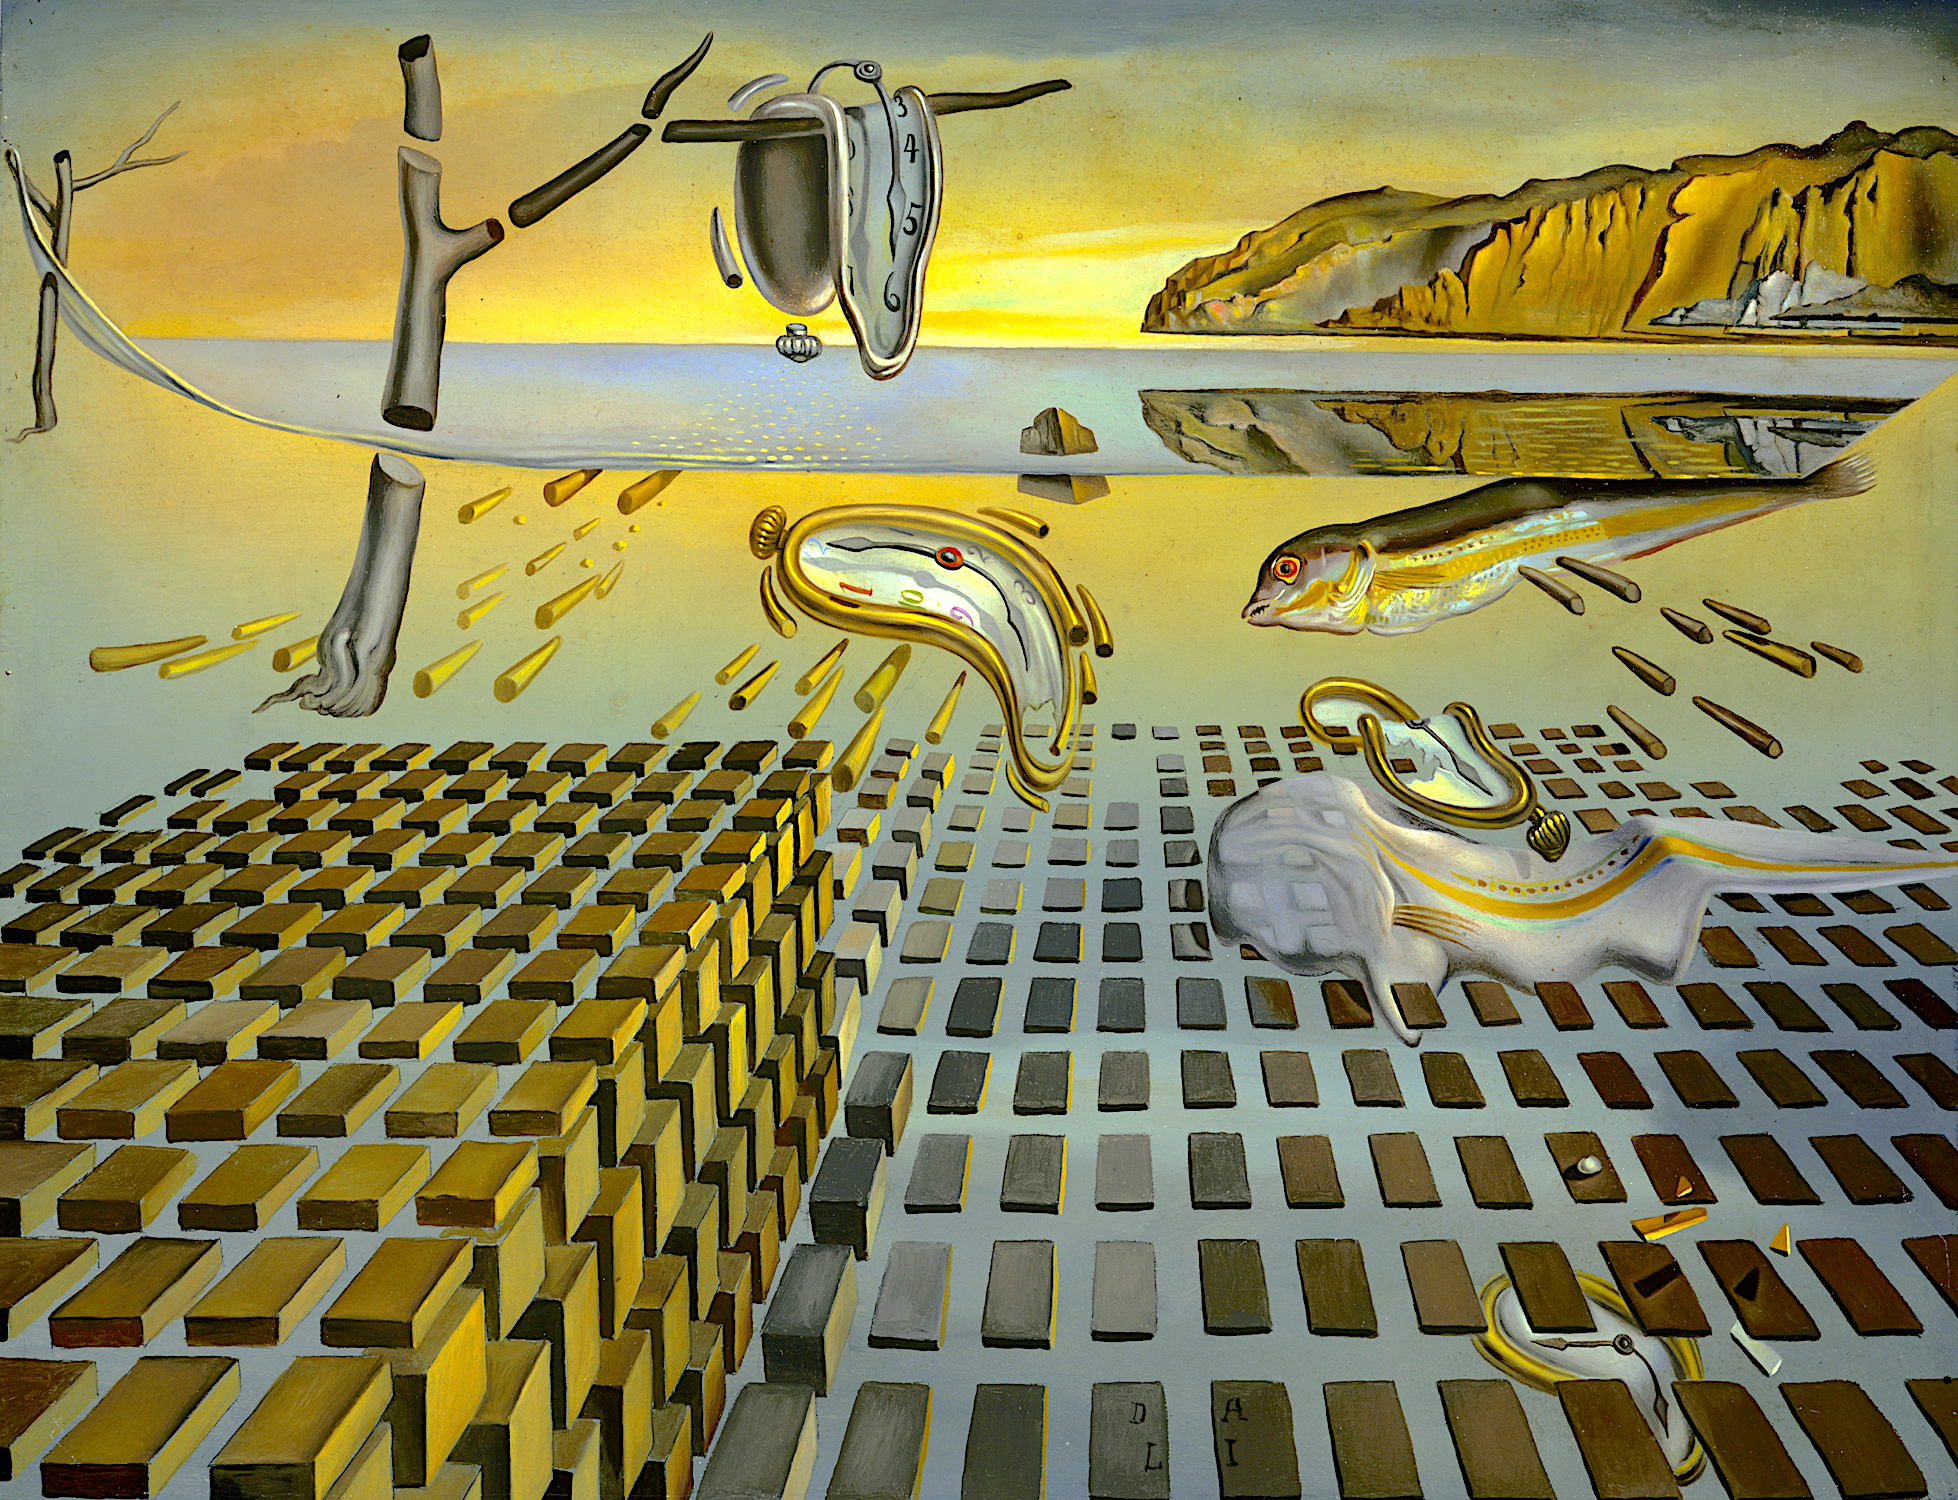 Se asemeja espiritual Sada Desintegración de la Persistencia de la memoria. - Salvador Dalí - Historia  Arte (HA!)